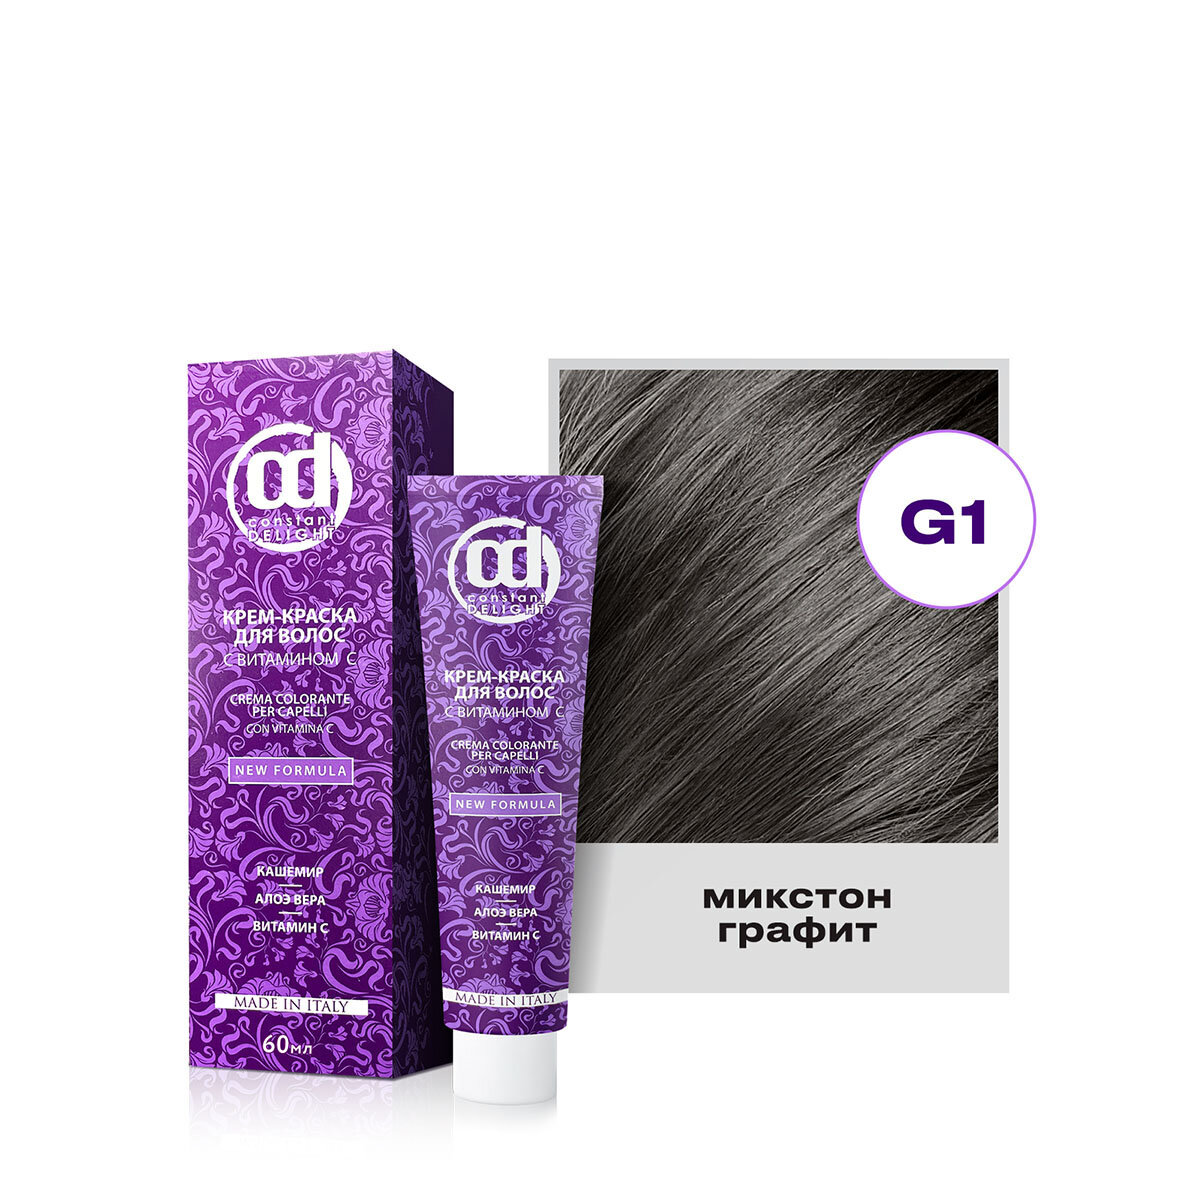 Крем-краска для окрашивания волос CONSTANT DELIGHT G1 микстон графит 60 мл